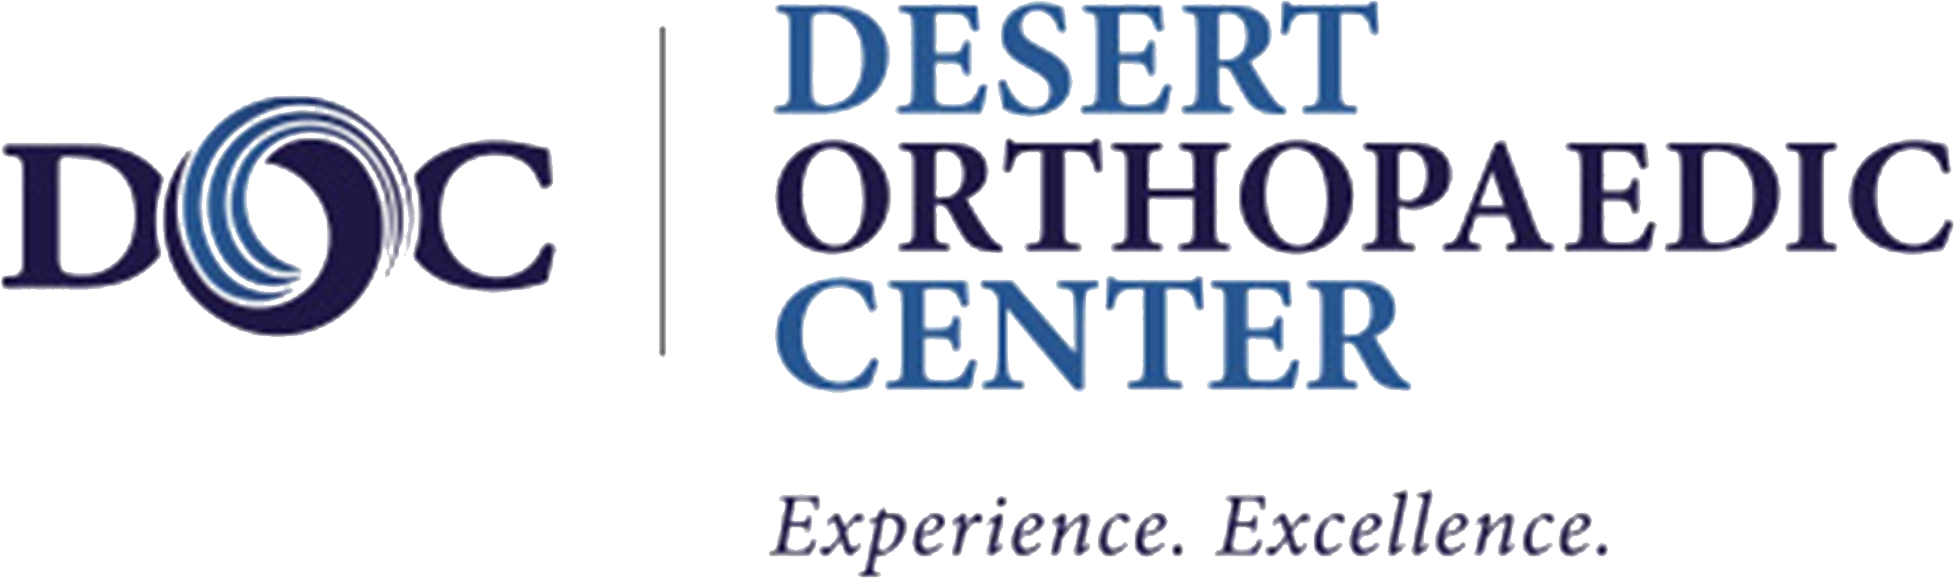 Desert Orthopaedic Center